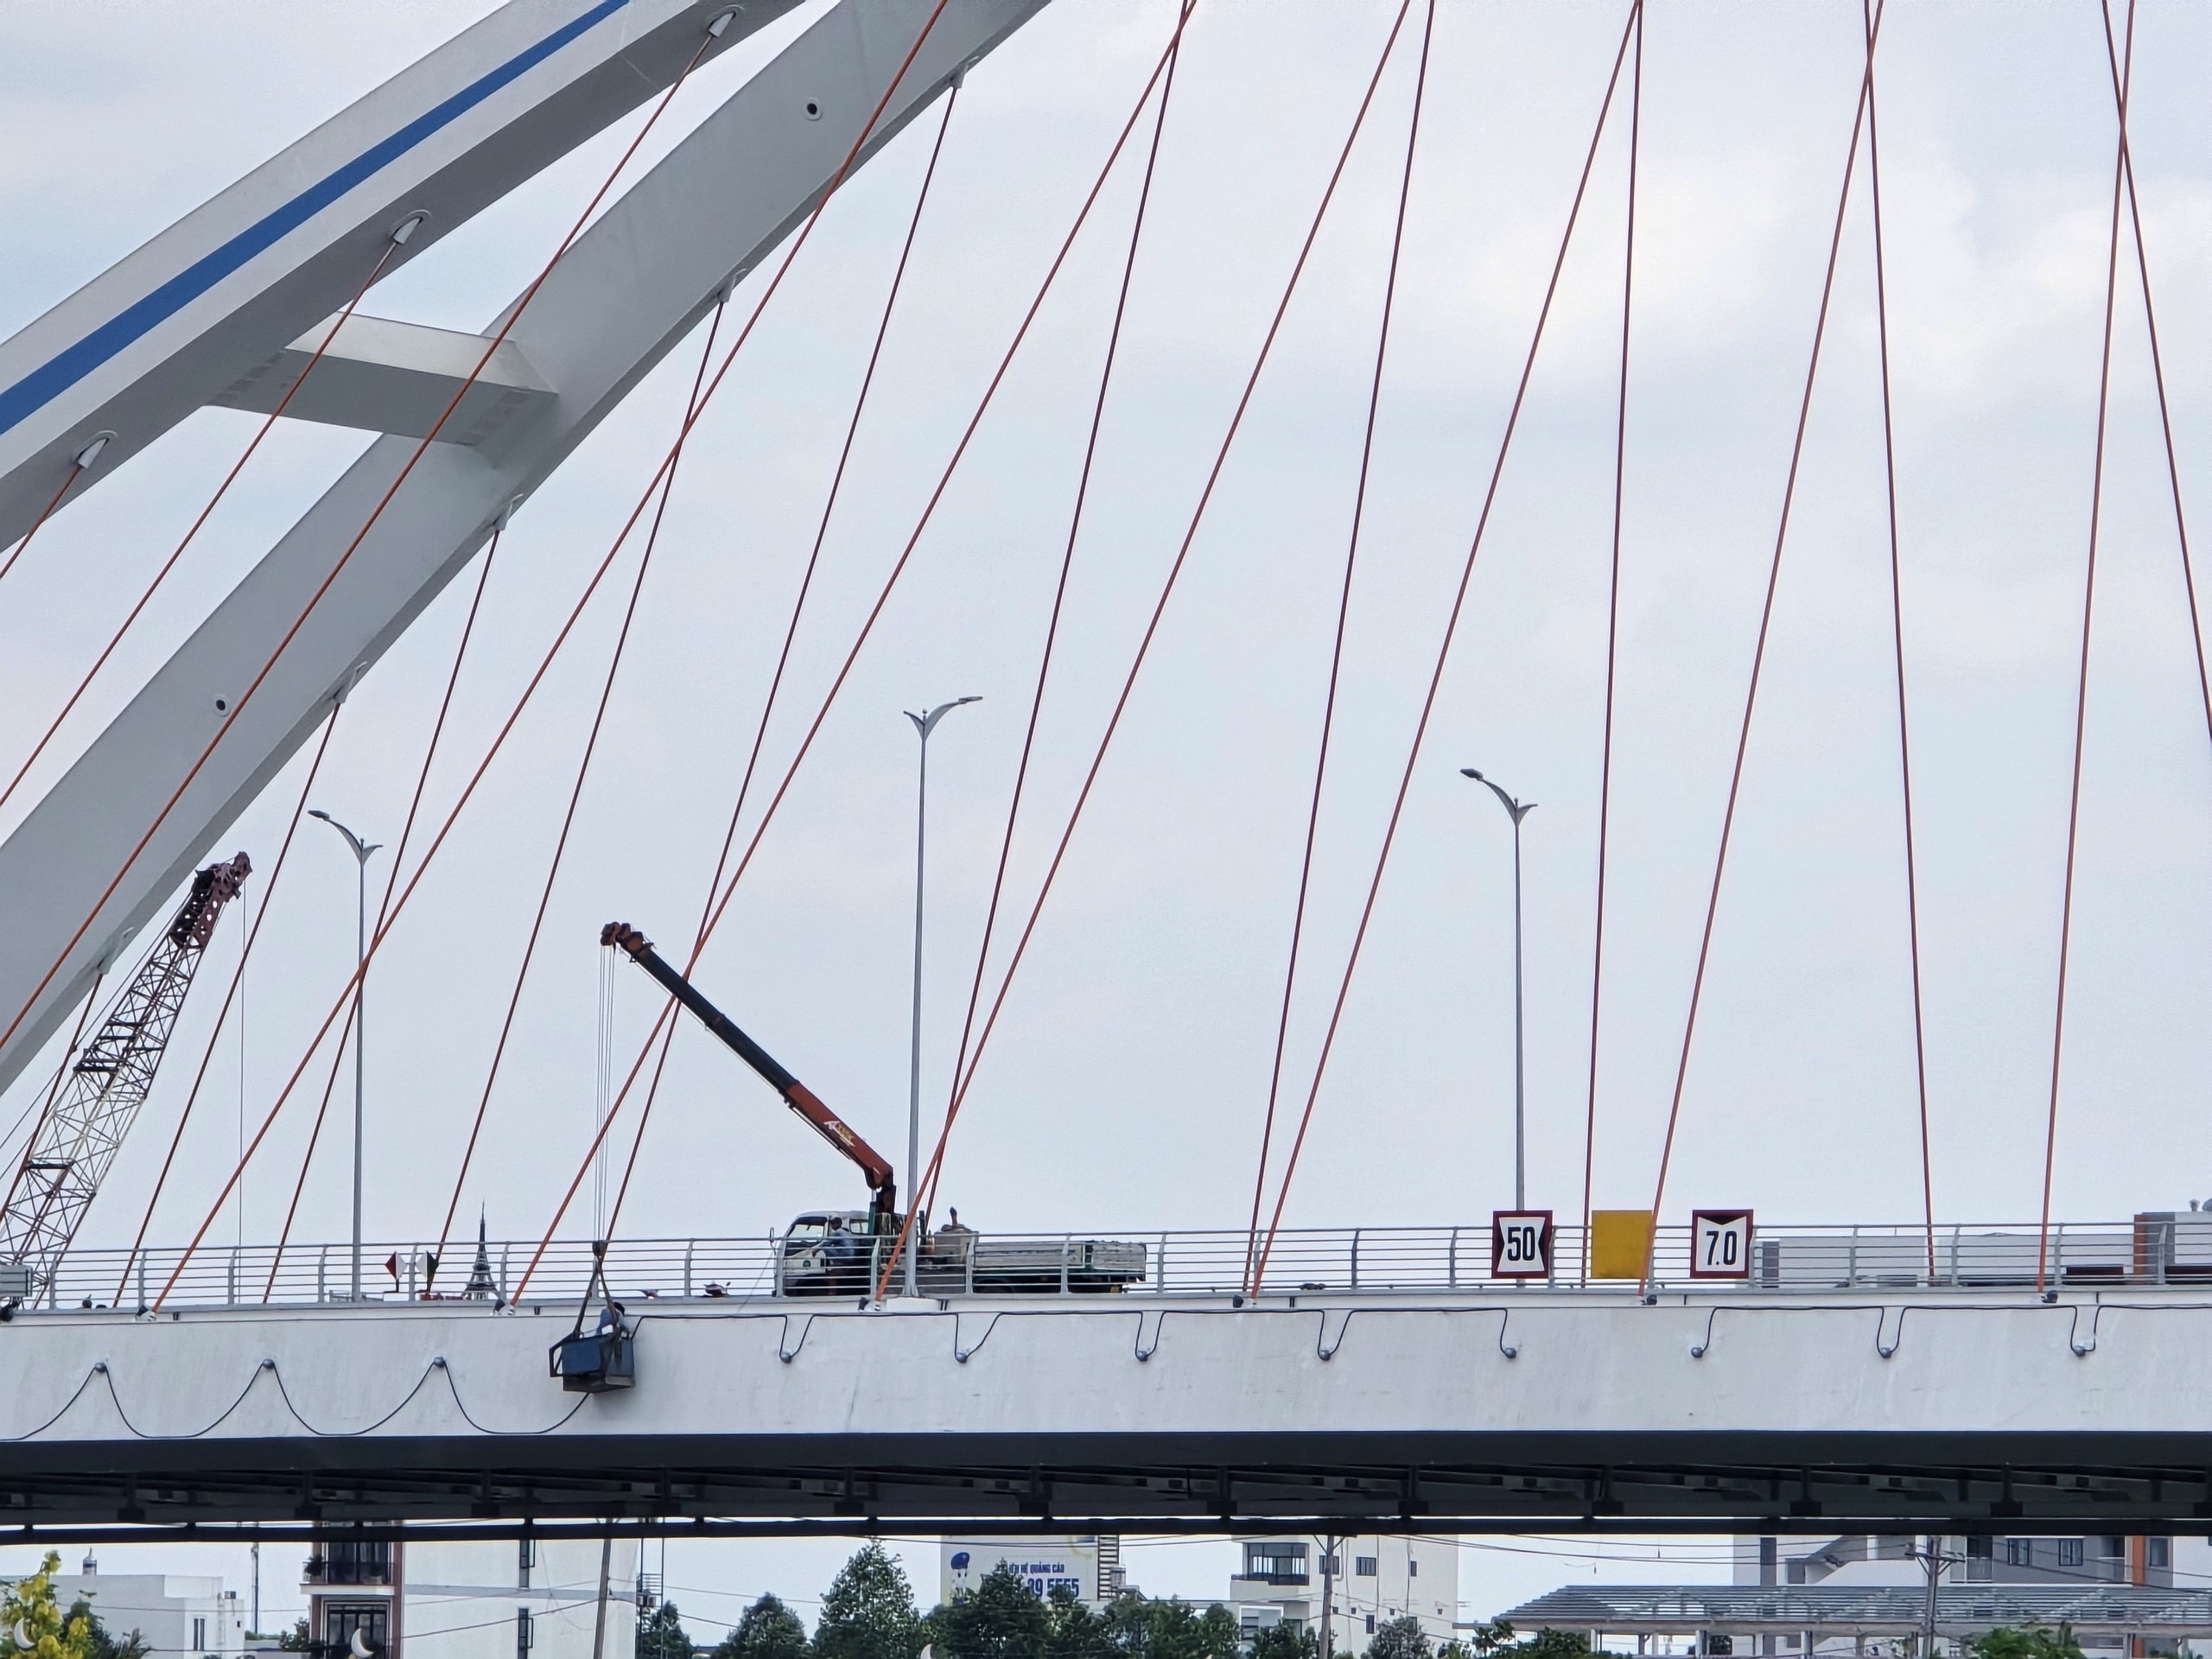 Cầu Trần Hoàng Na và cầu Tây Đô: Hai cây cầu bắc qua sông Cần Thơ khánh thành dịp lễ 30/4- Ảnh 2.